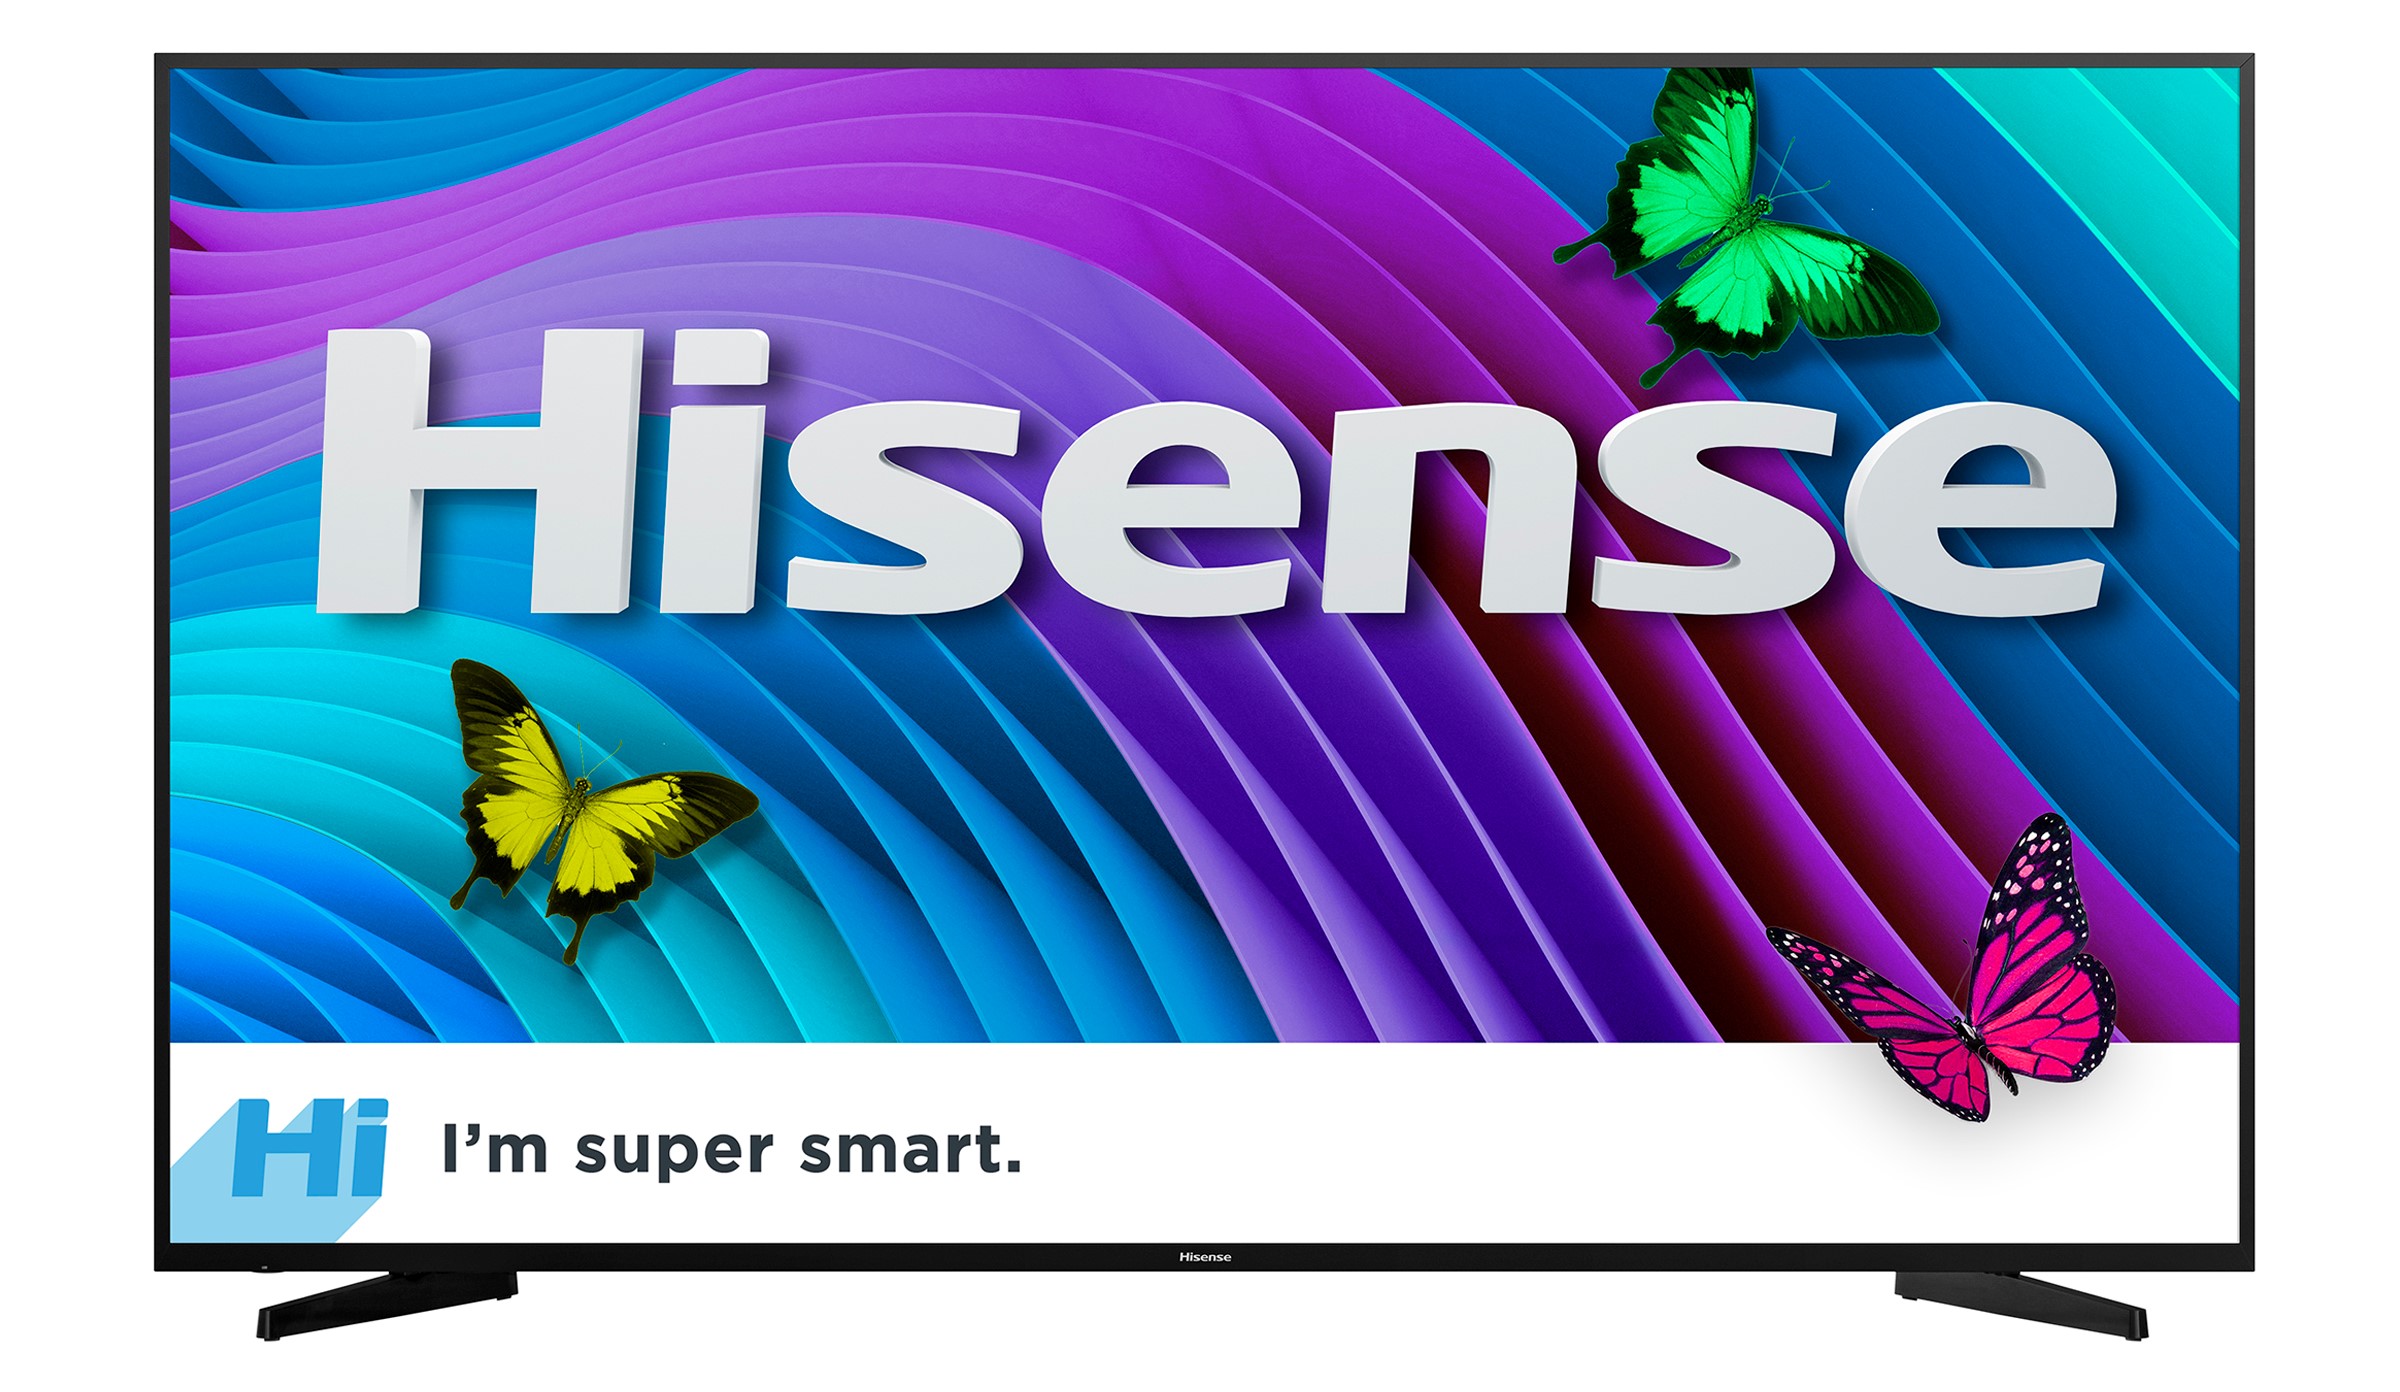 Hisense 65H6D 65" Class 4K 2160p Smart LED TV - image 1 of 8